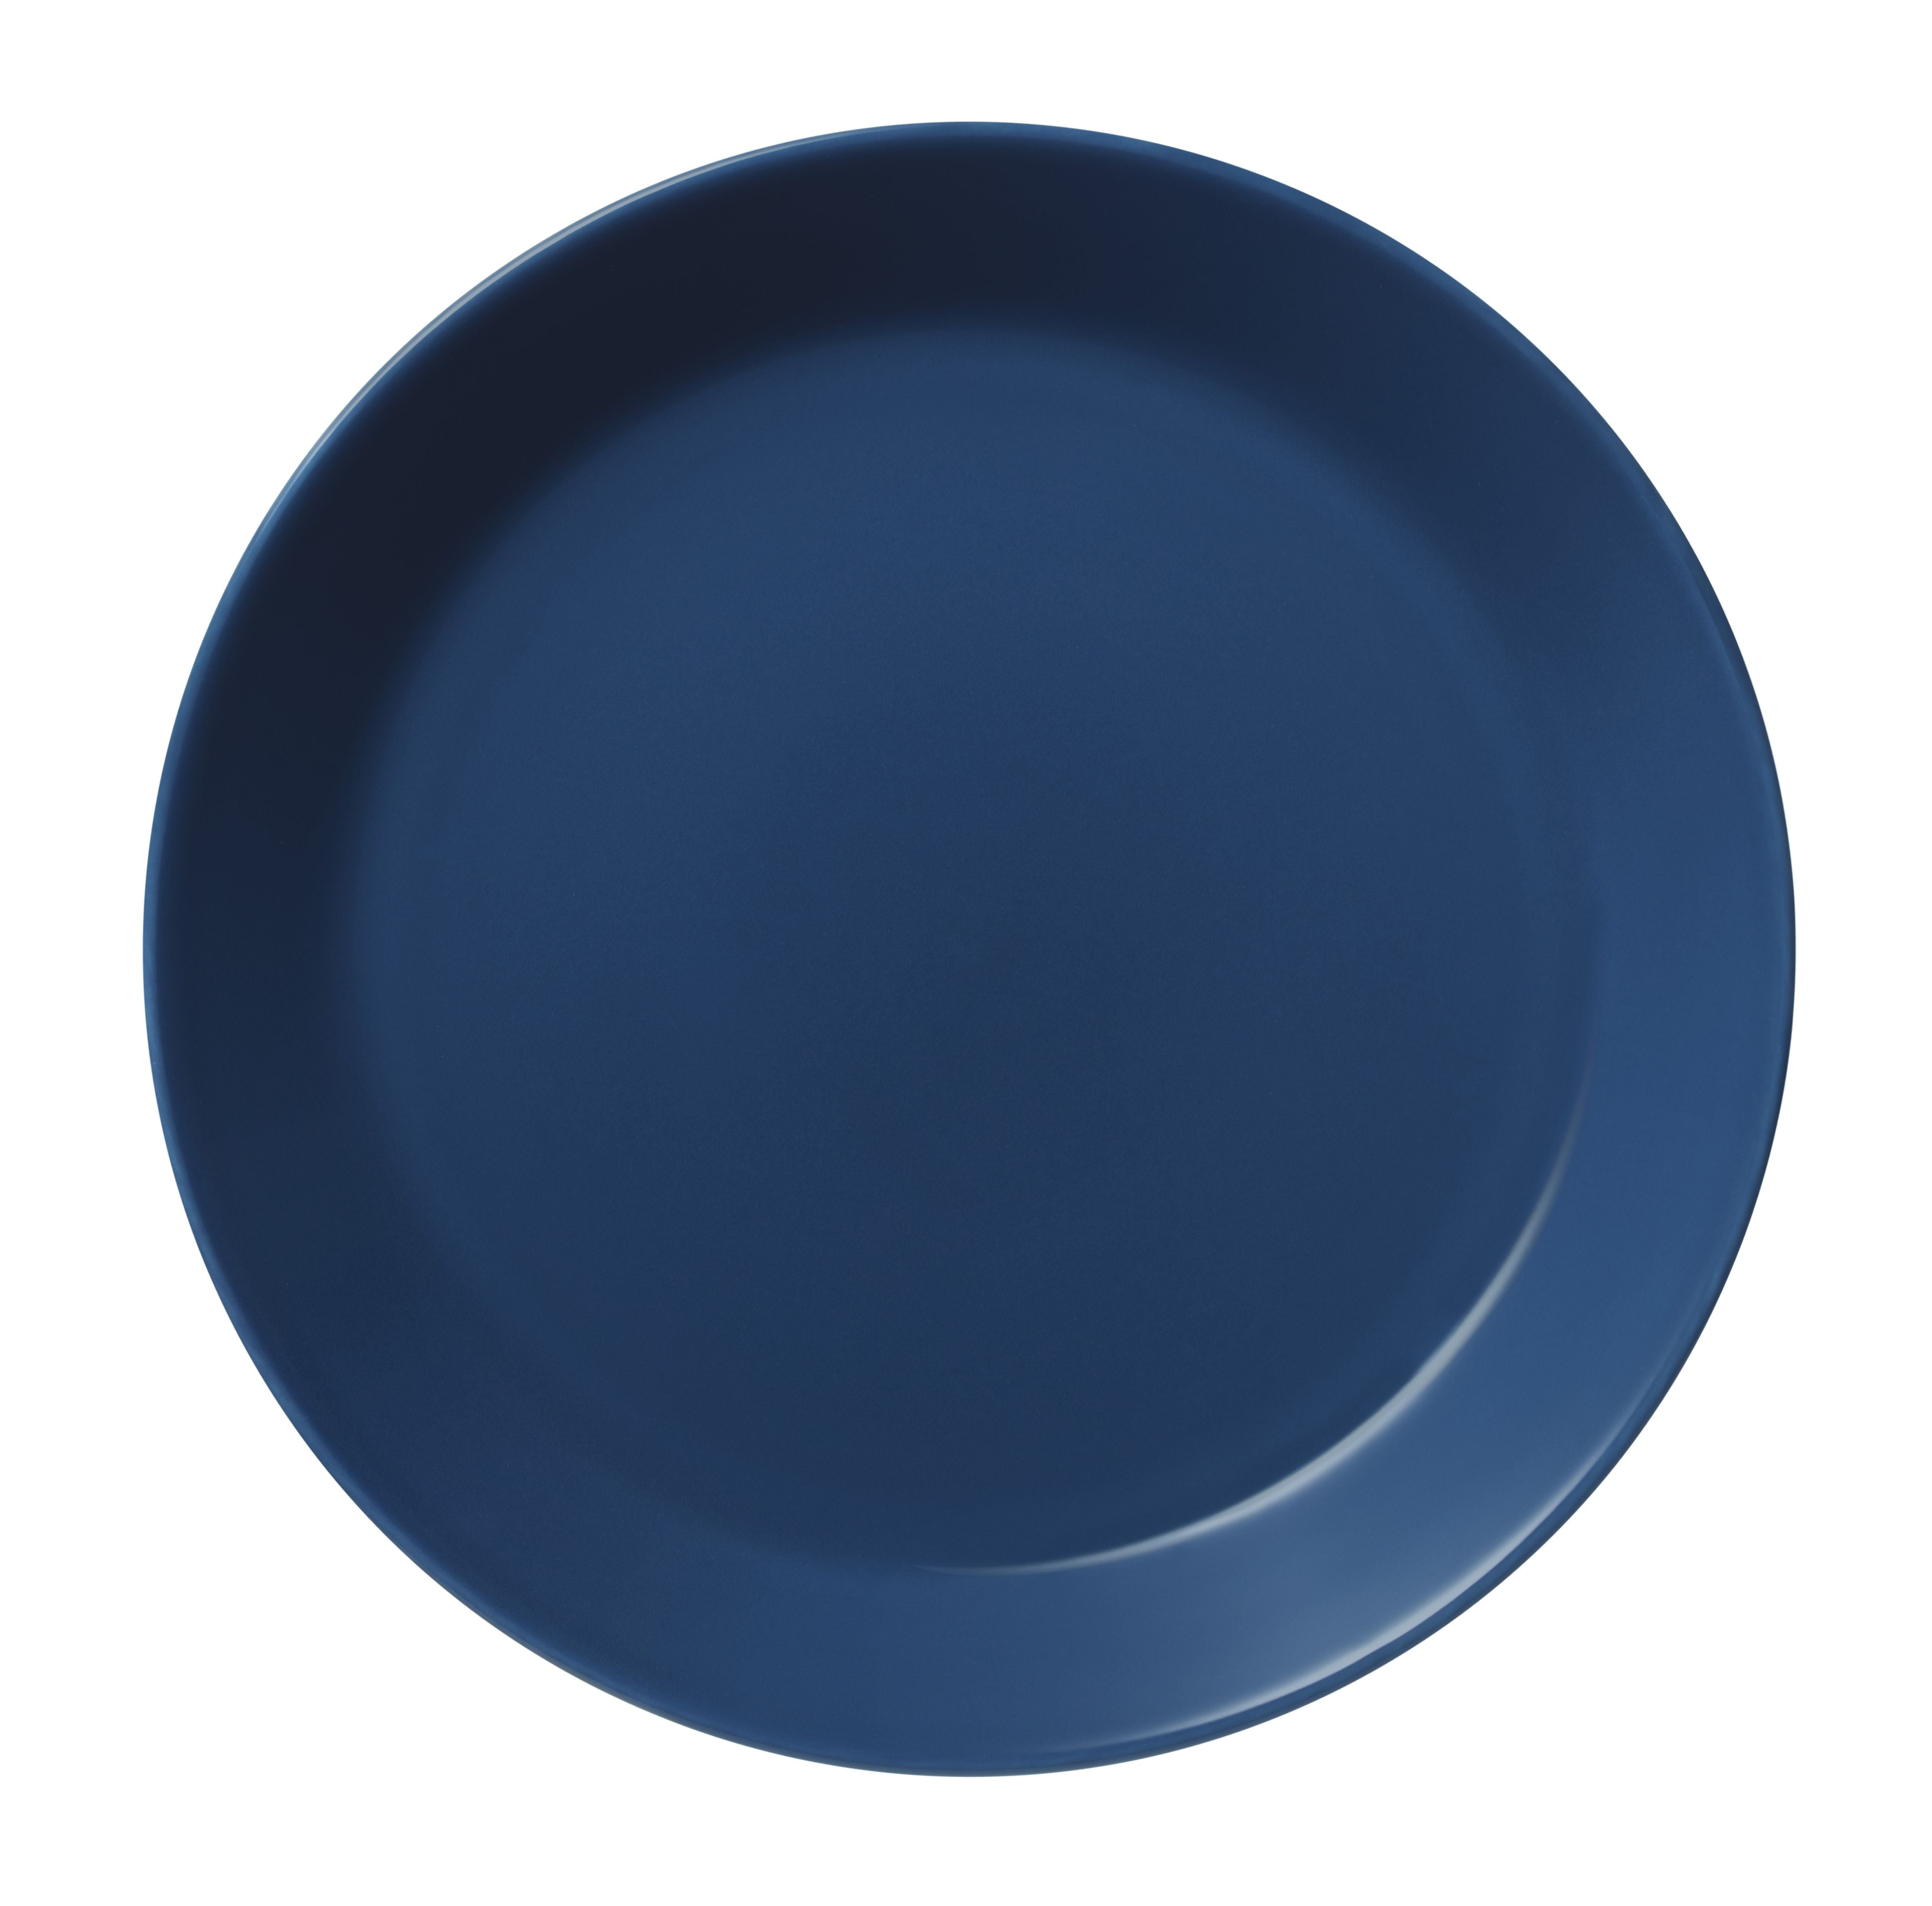 Iittala Teema plade 23 cm, vintage blå